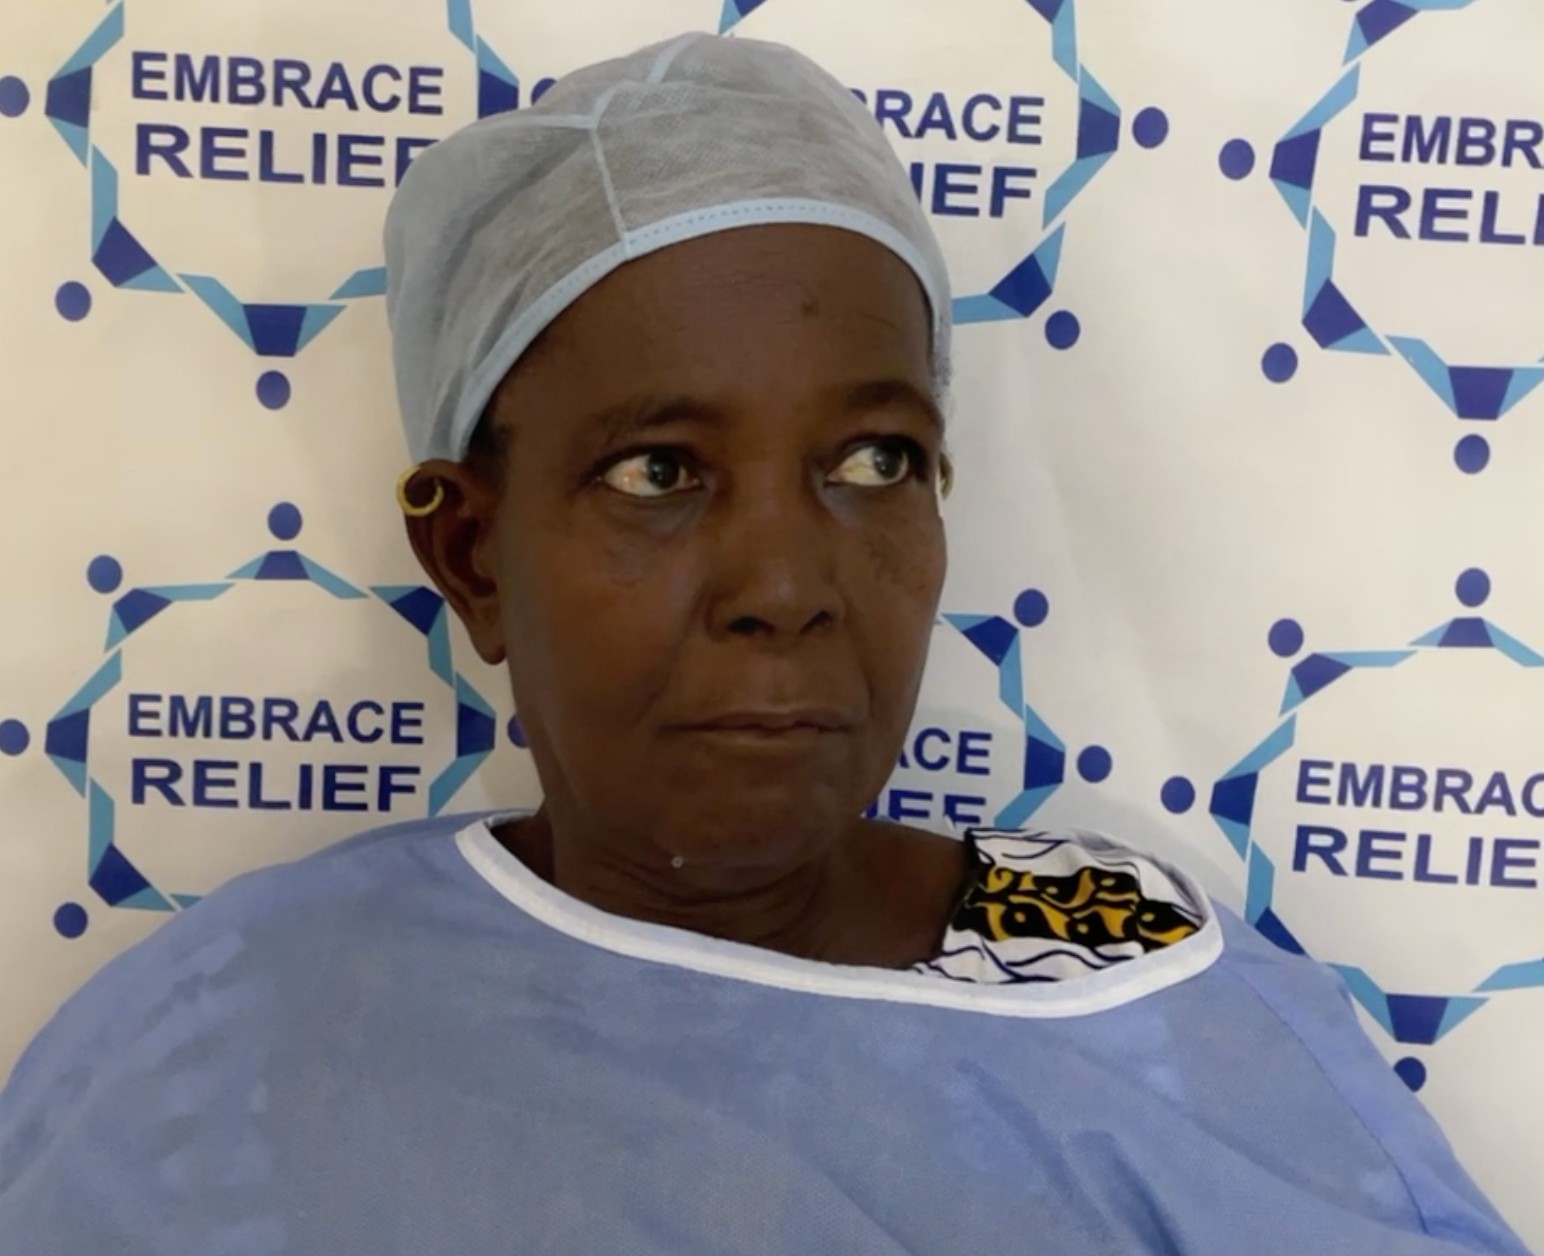 Djeneba Diallo Cataract Surgery Story